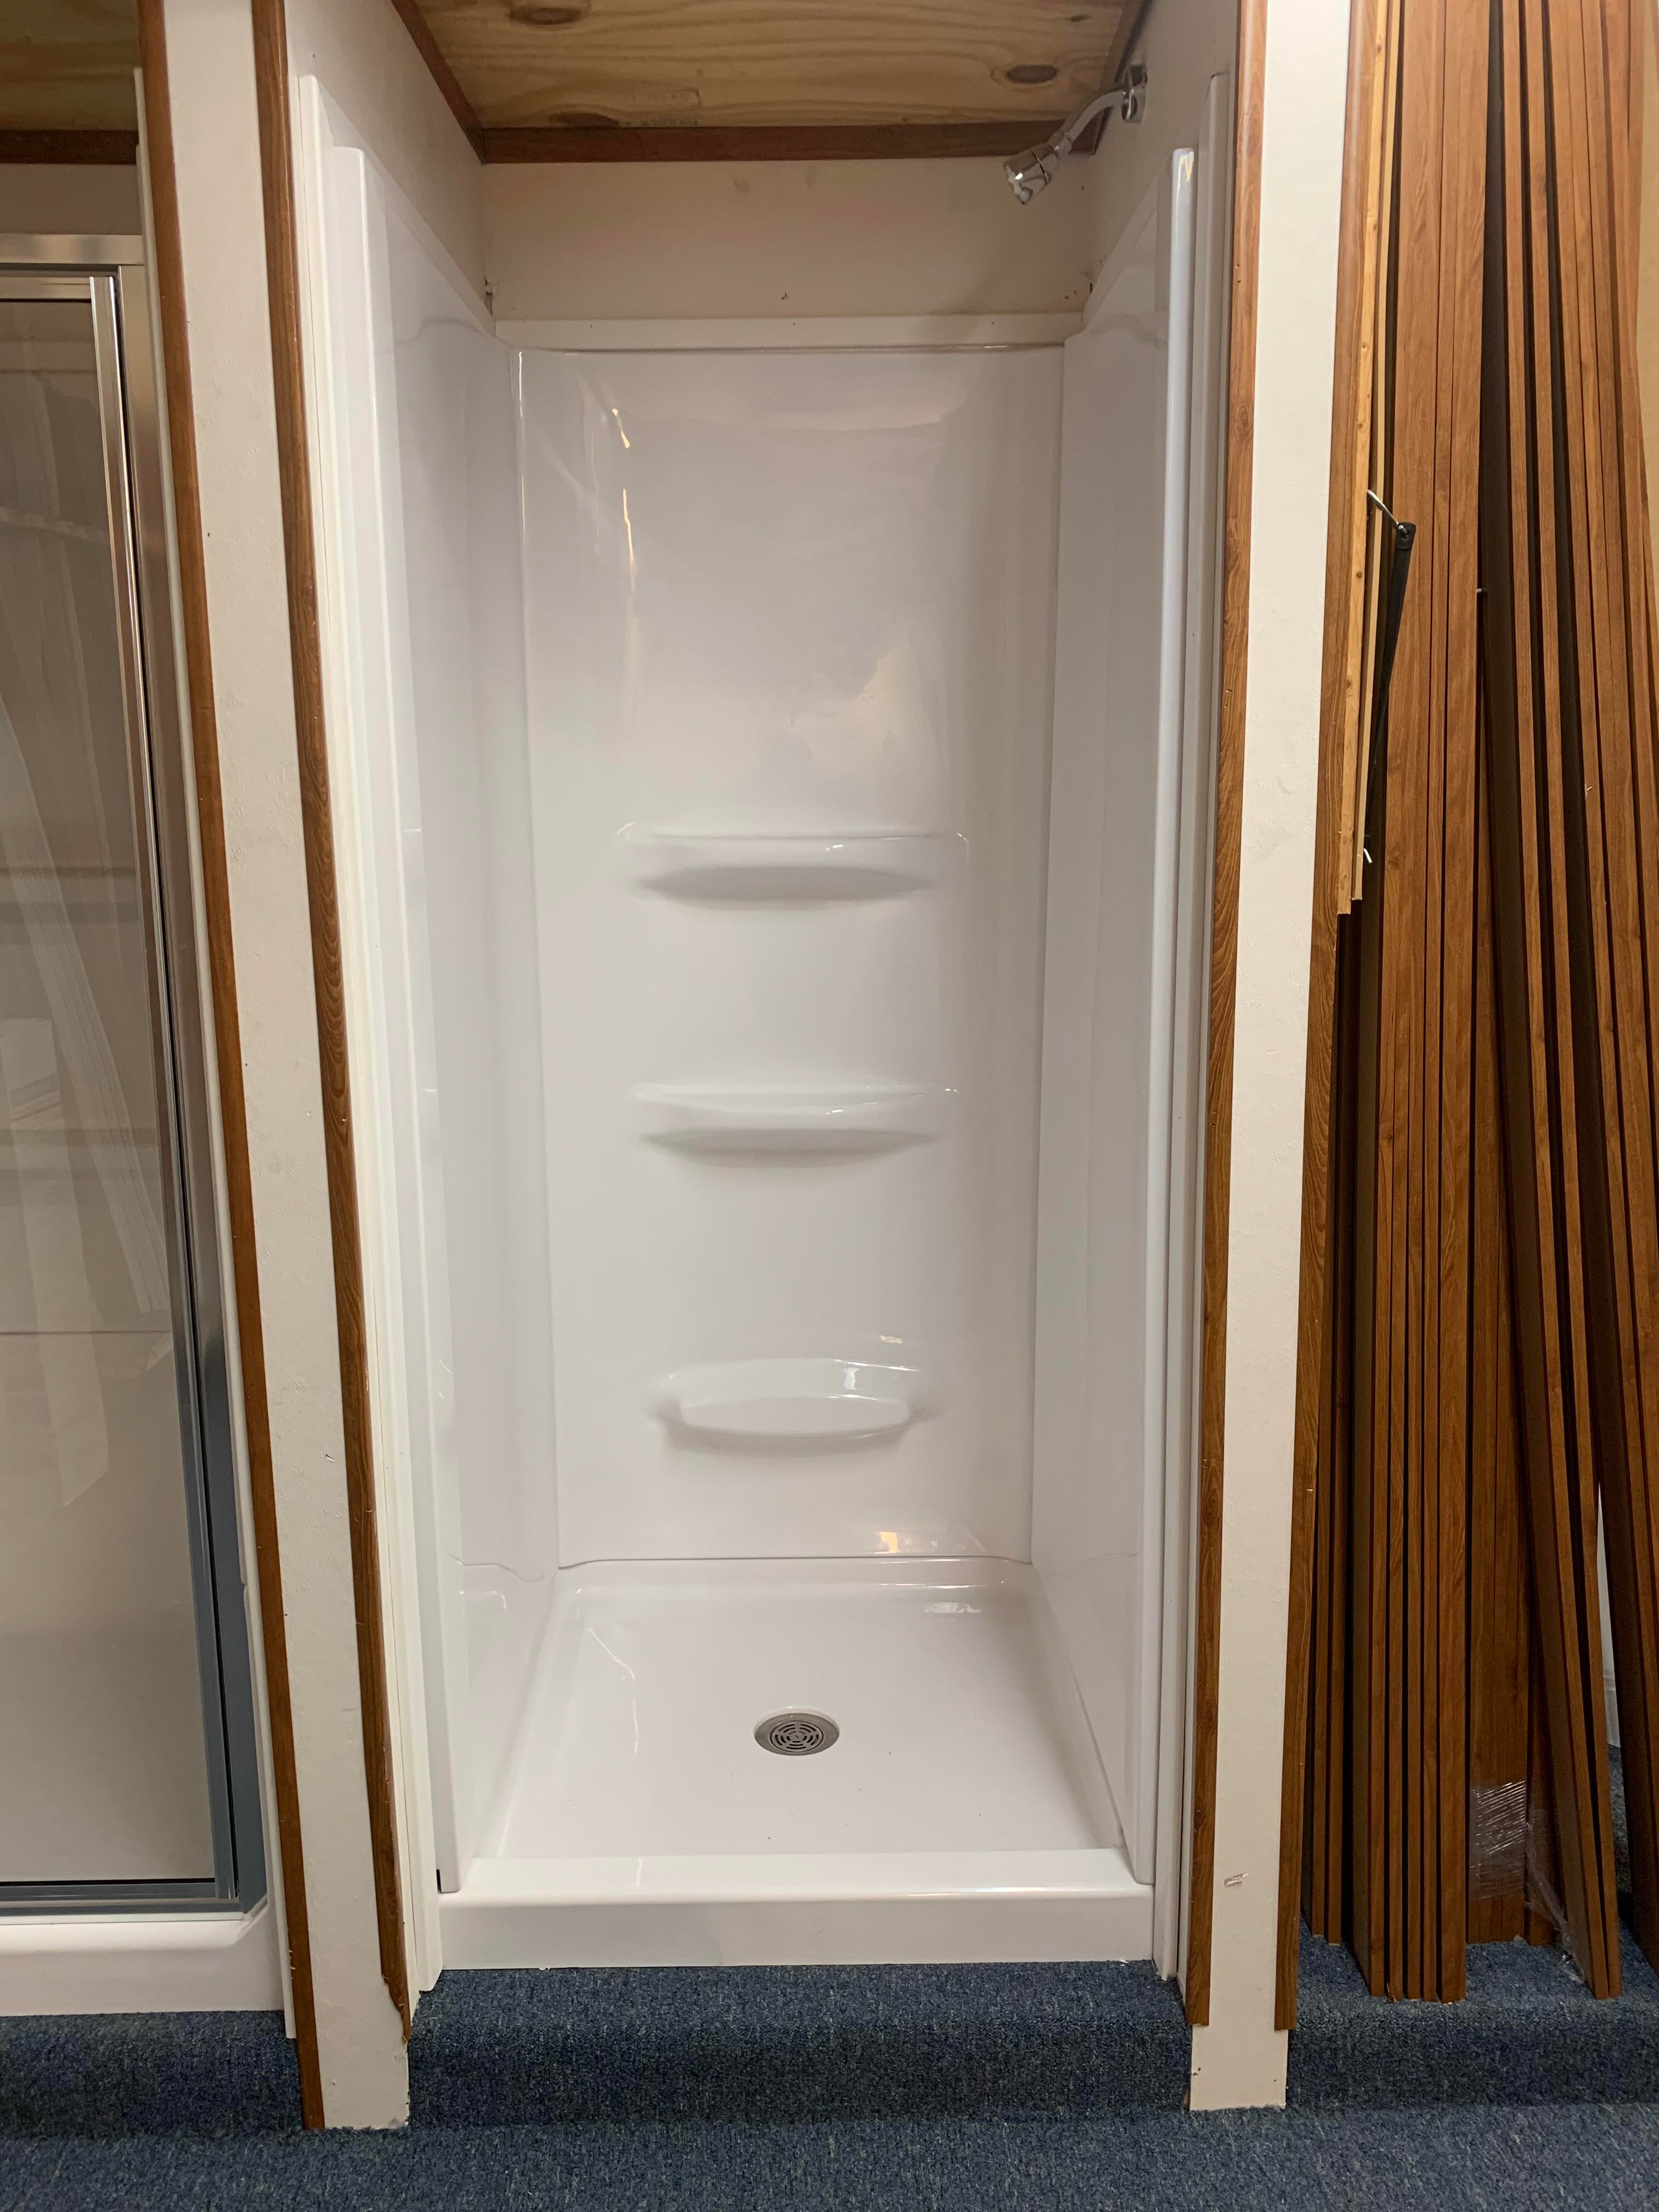 Fiberglass Prefab Shower Stalls vs Custom Tiled Showers — Degnan